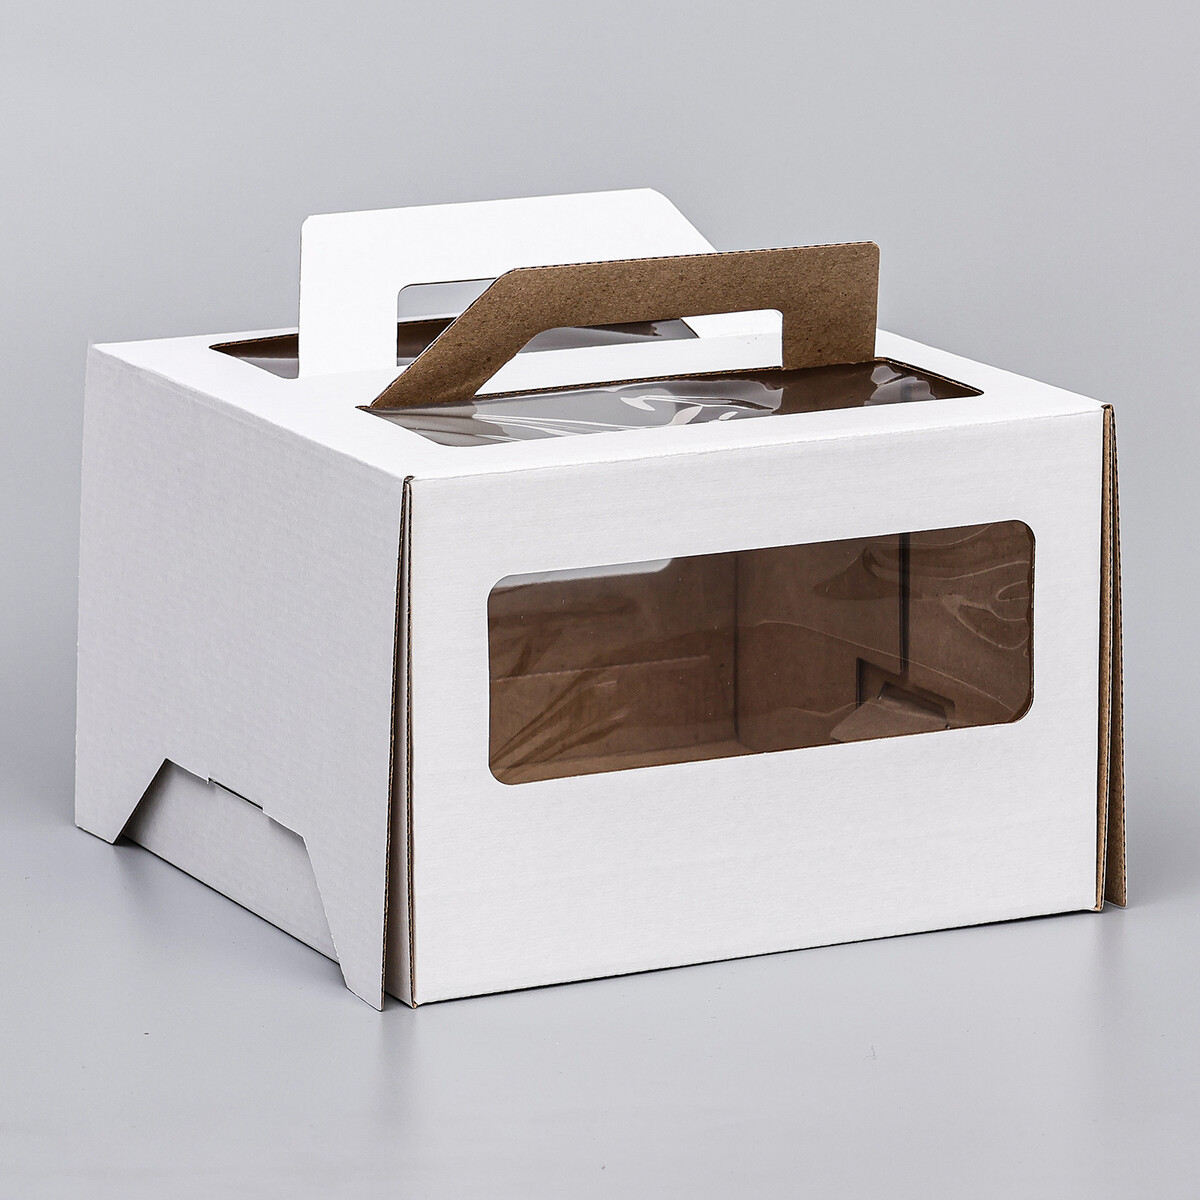 Коробка под торт 2 окна, с ручками, белая, 22 х 22 х 15 см коробка самосборная белая 21 х 21 х 3 см